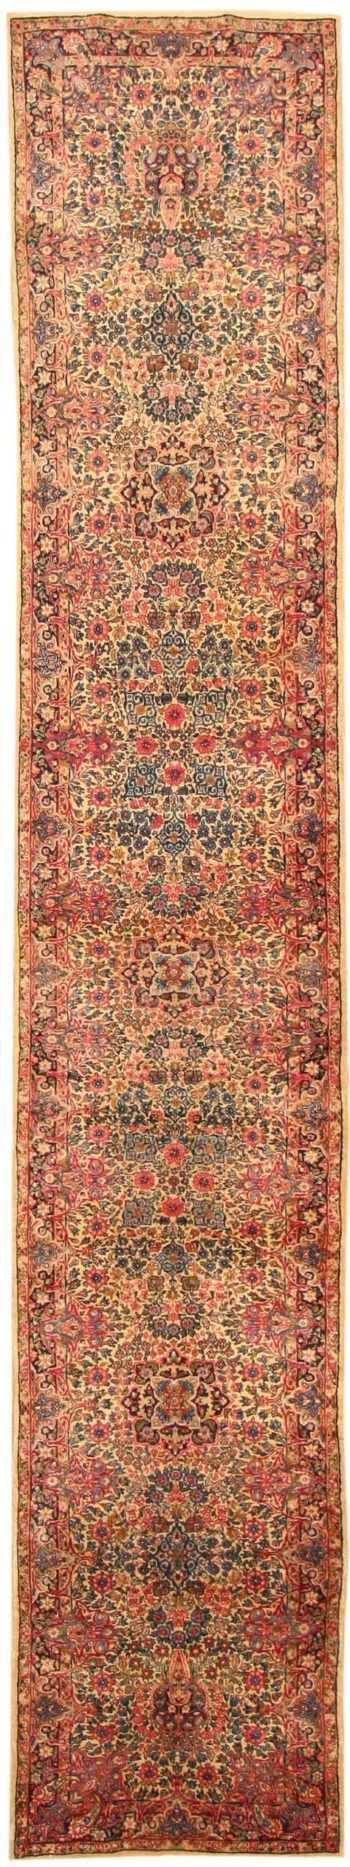 Antique Kerman Persian Runner Rug 43873 Nazmiyal Antique Rugs